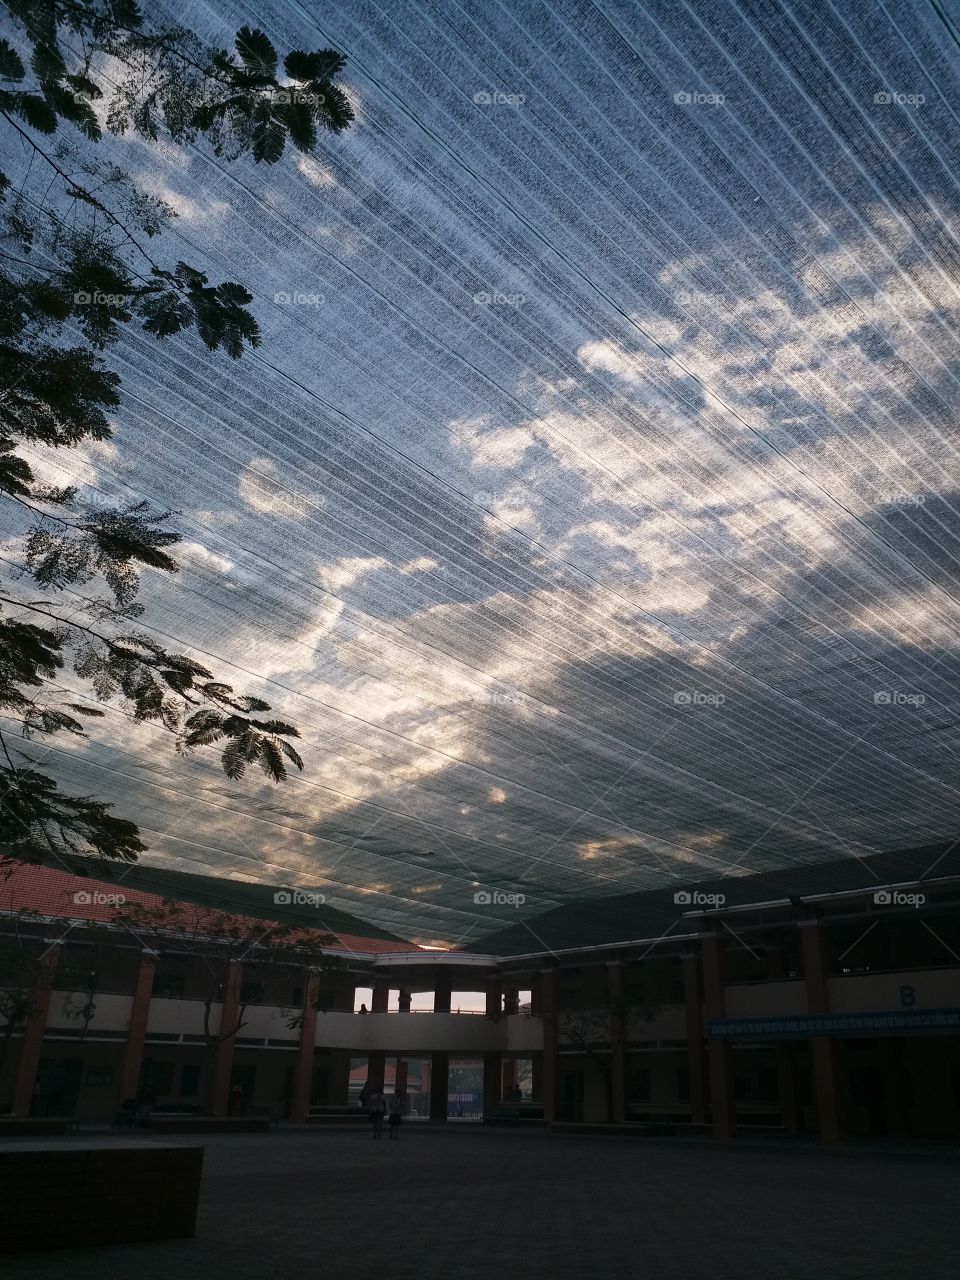 sunset over a high school